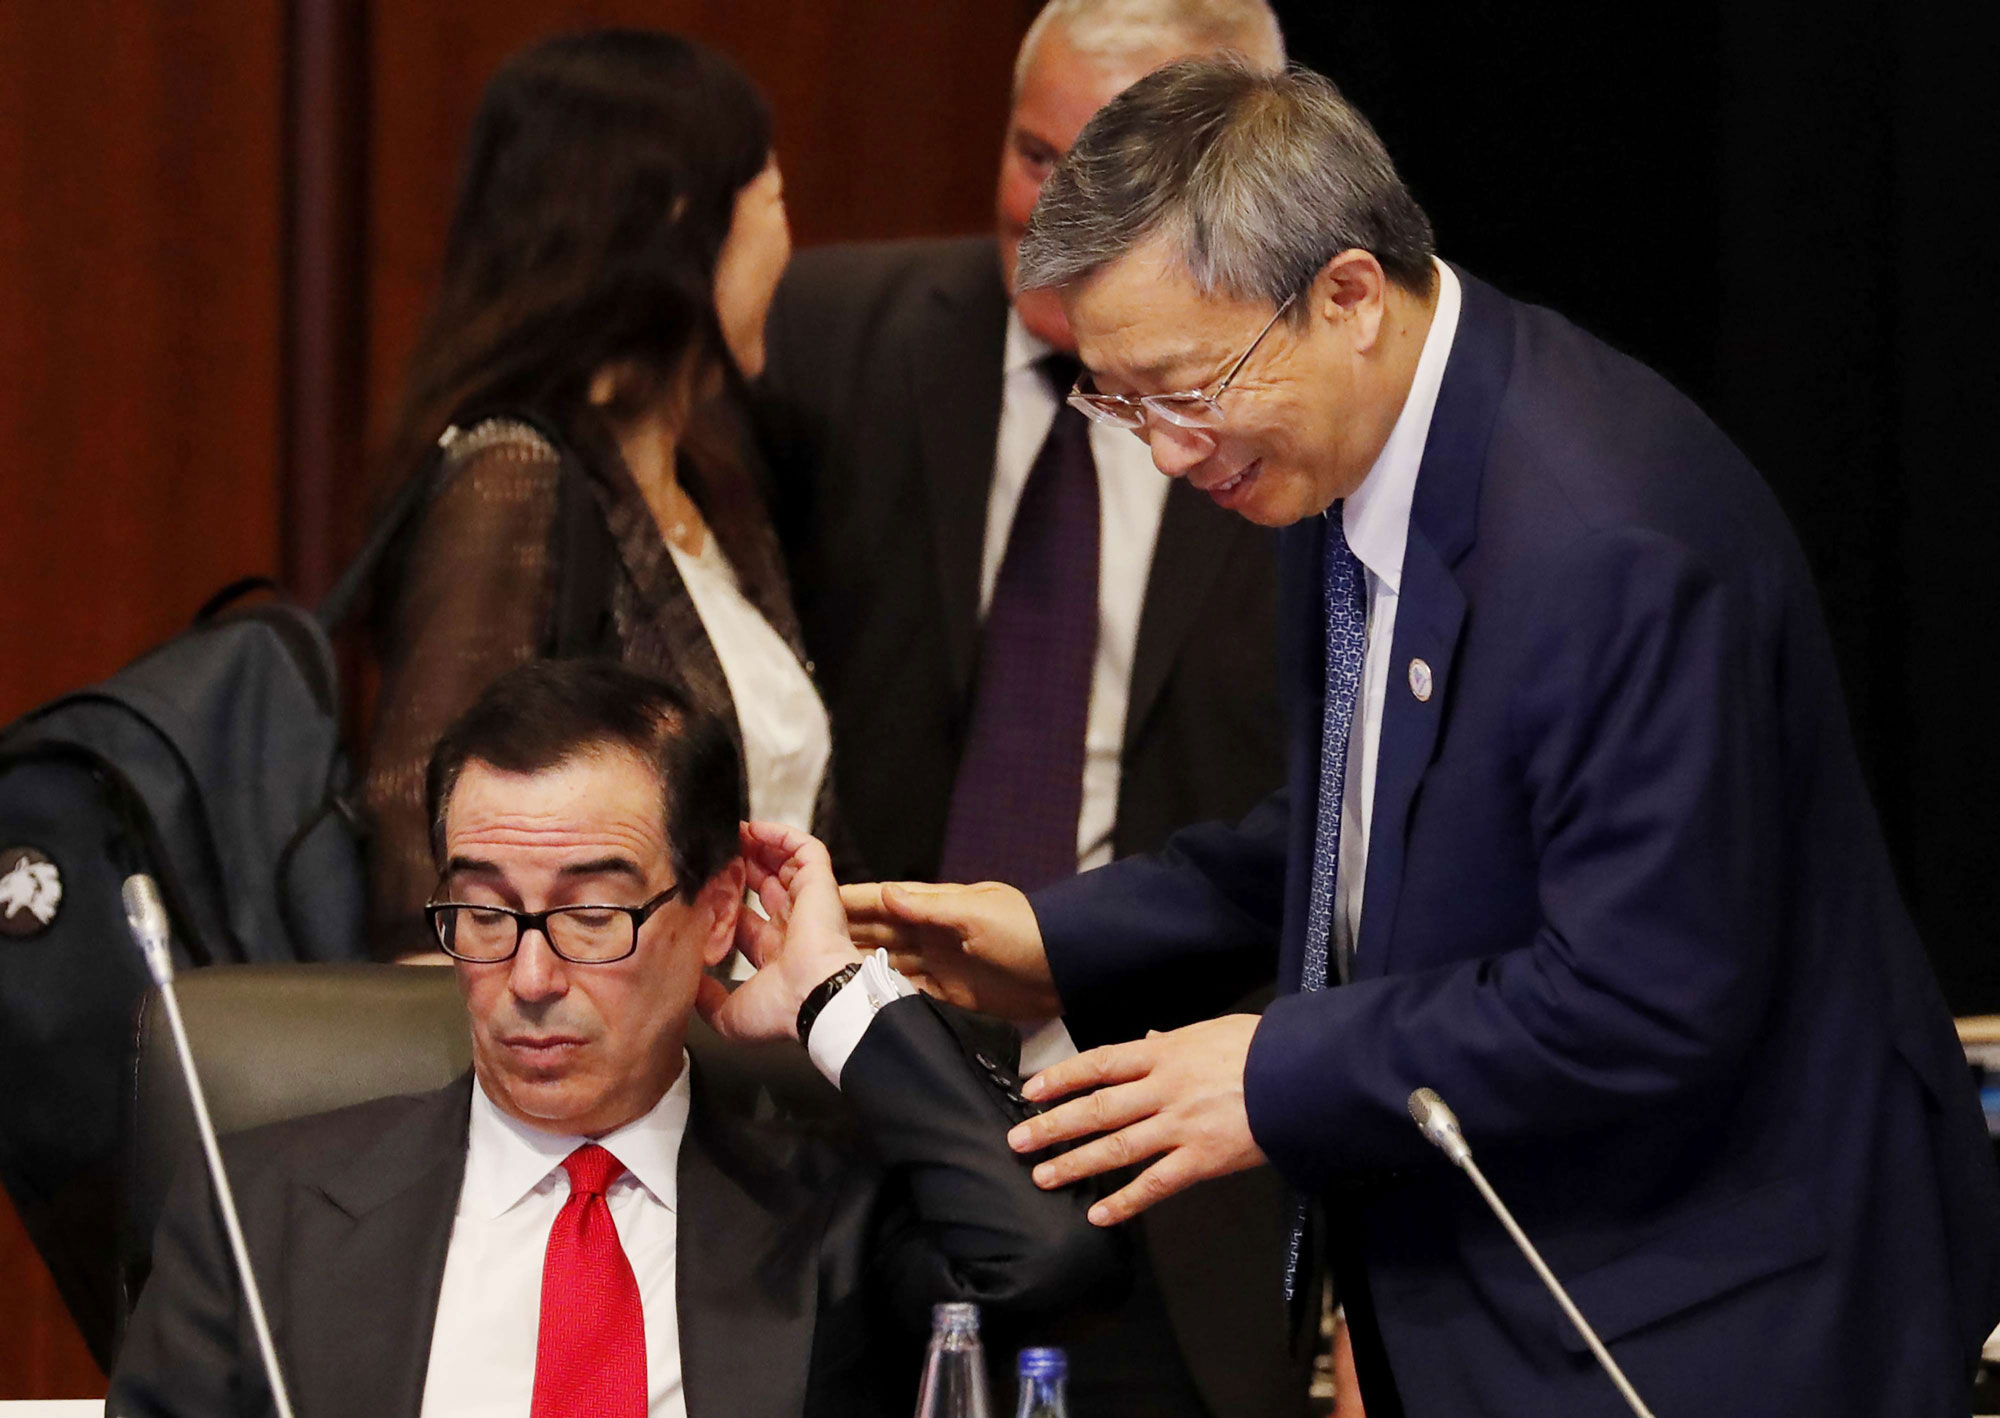 محافظ البنك المركزي الصيني في حديث جانبي مع وزير الخزانة الأميركي